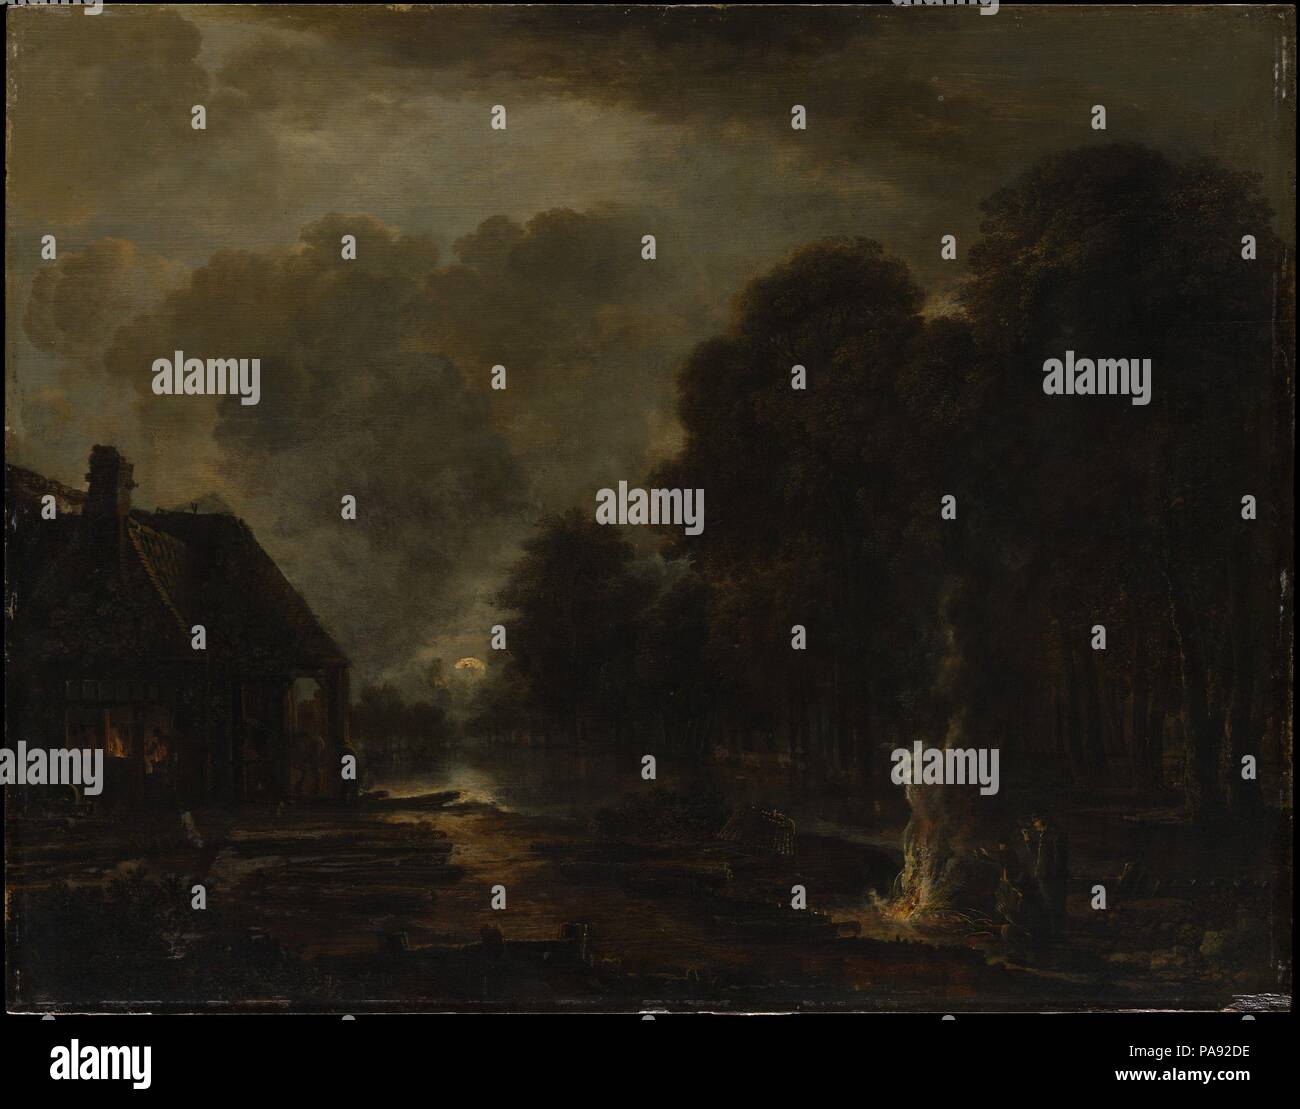 Le maréchal-ferrant. Artiste : Aert van der Neer (Néerlandais, Gorinchem 1603/4-1677 Amsterdam). Dimensions : 19 x 24 1/8 in. (48,3 x 61,3 cm). Date : début ou mi-1650s. Van der Neer était préoccupé avec les effets de lumière dans la nature l'a conduit à peindre des dizaines de vues nocturnes. Dans ce cas, la lumière chaude d'une forge et un feu déclenché la lueur froide et réflexions de la lune. Musée : Metropolitan Museum of Art, New York, USA. Banque D'Images